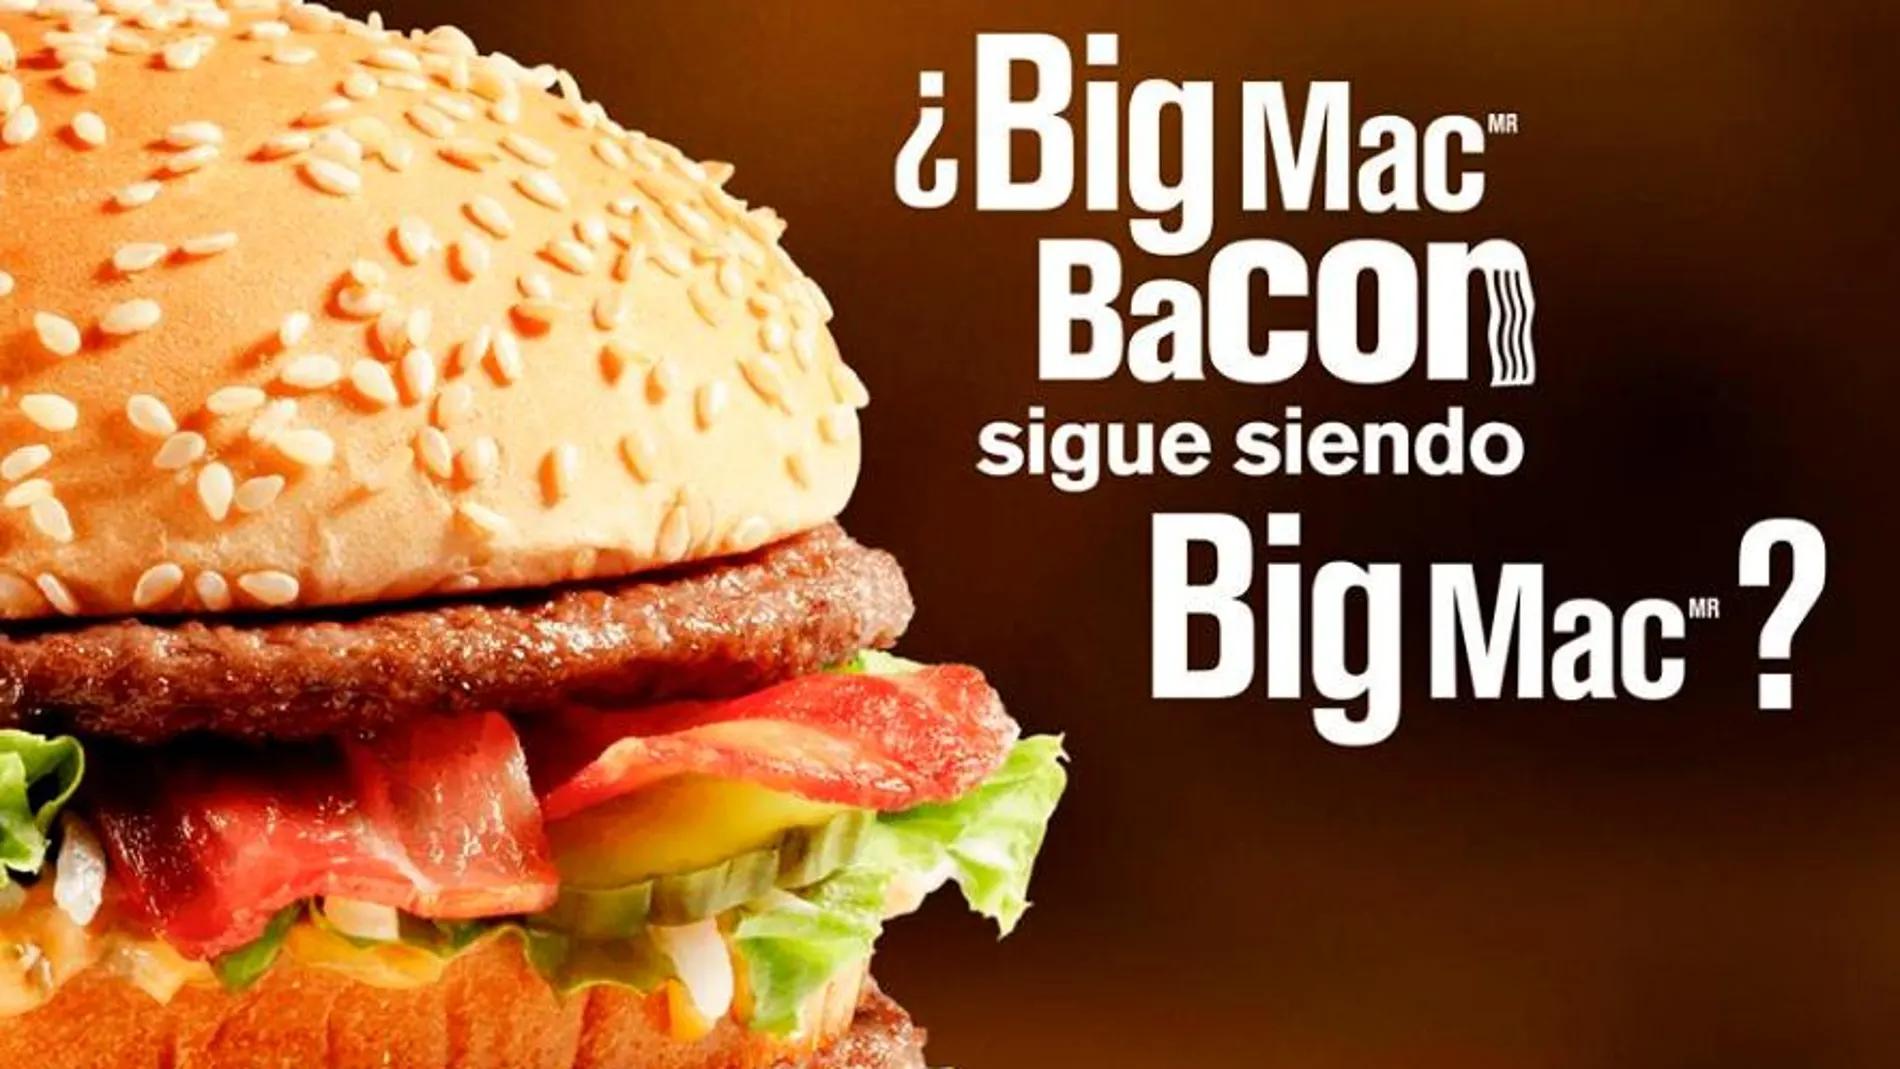 Imagen de la campaña de McDonald’s